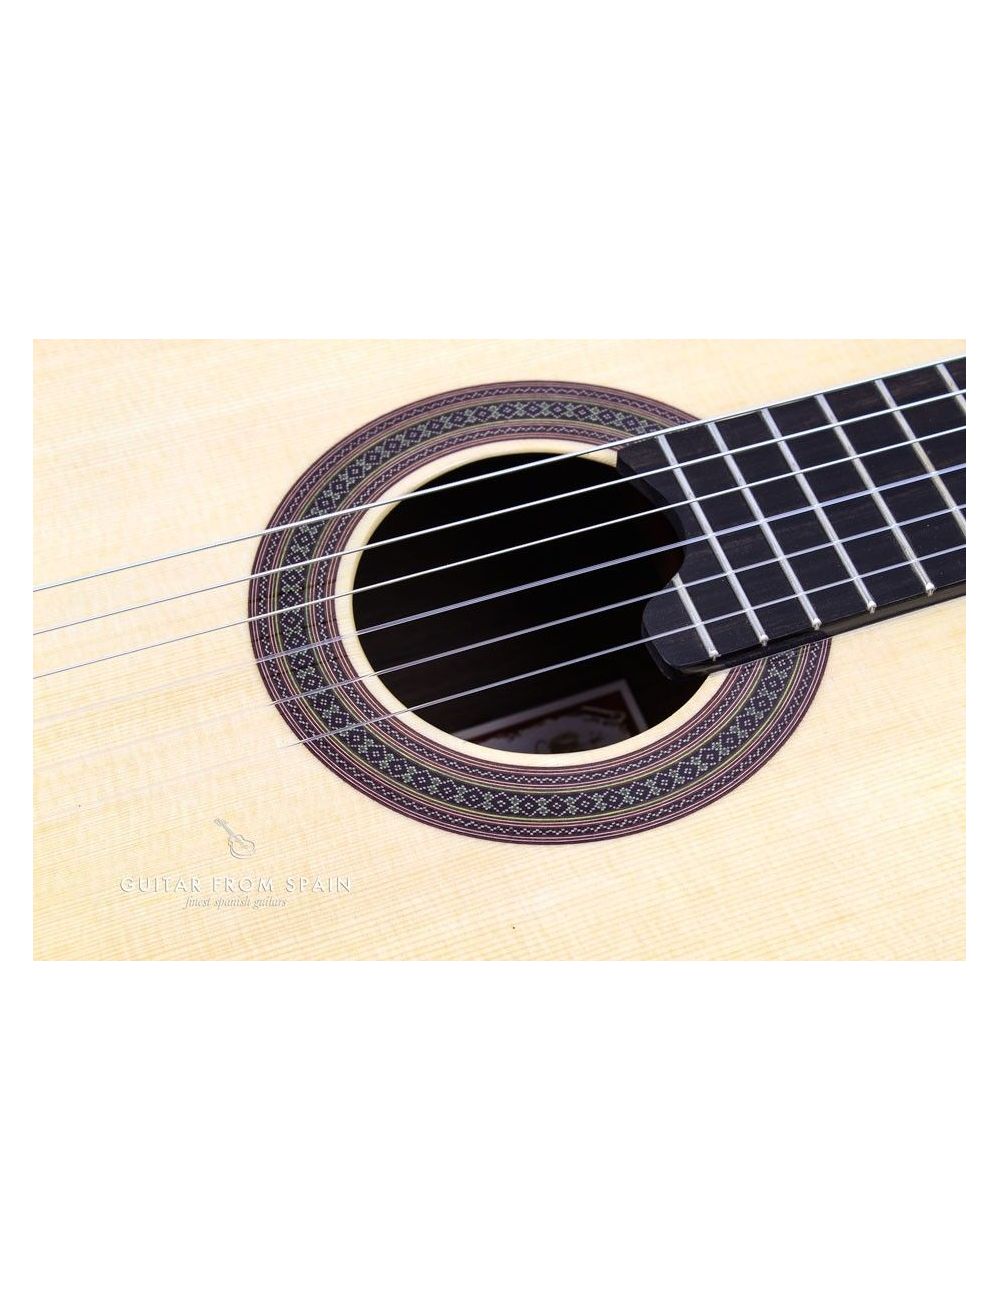 Prudencio Saez 132 Klassische Gitarre